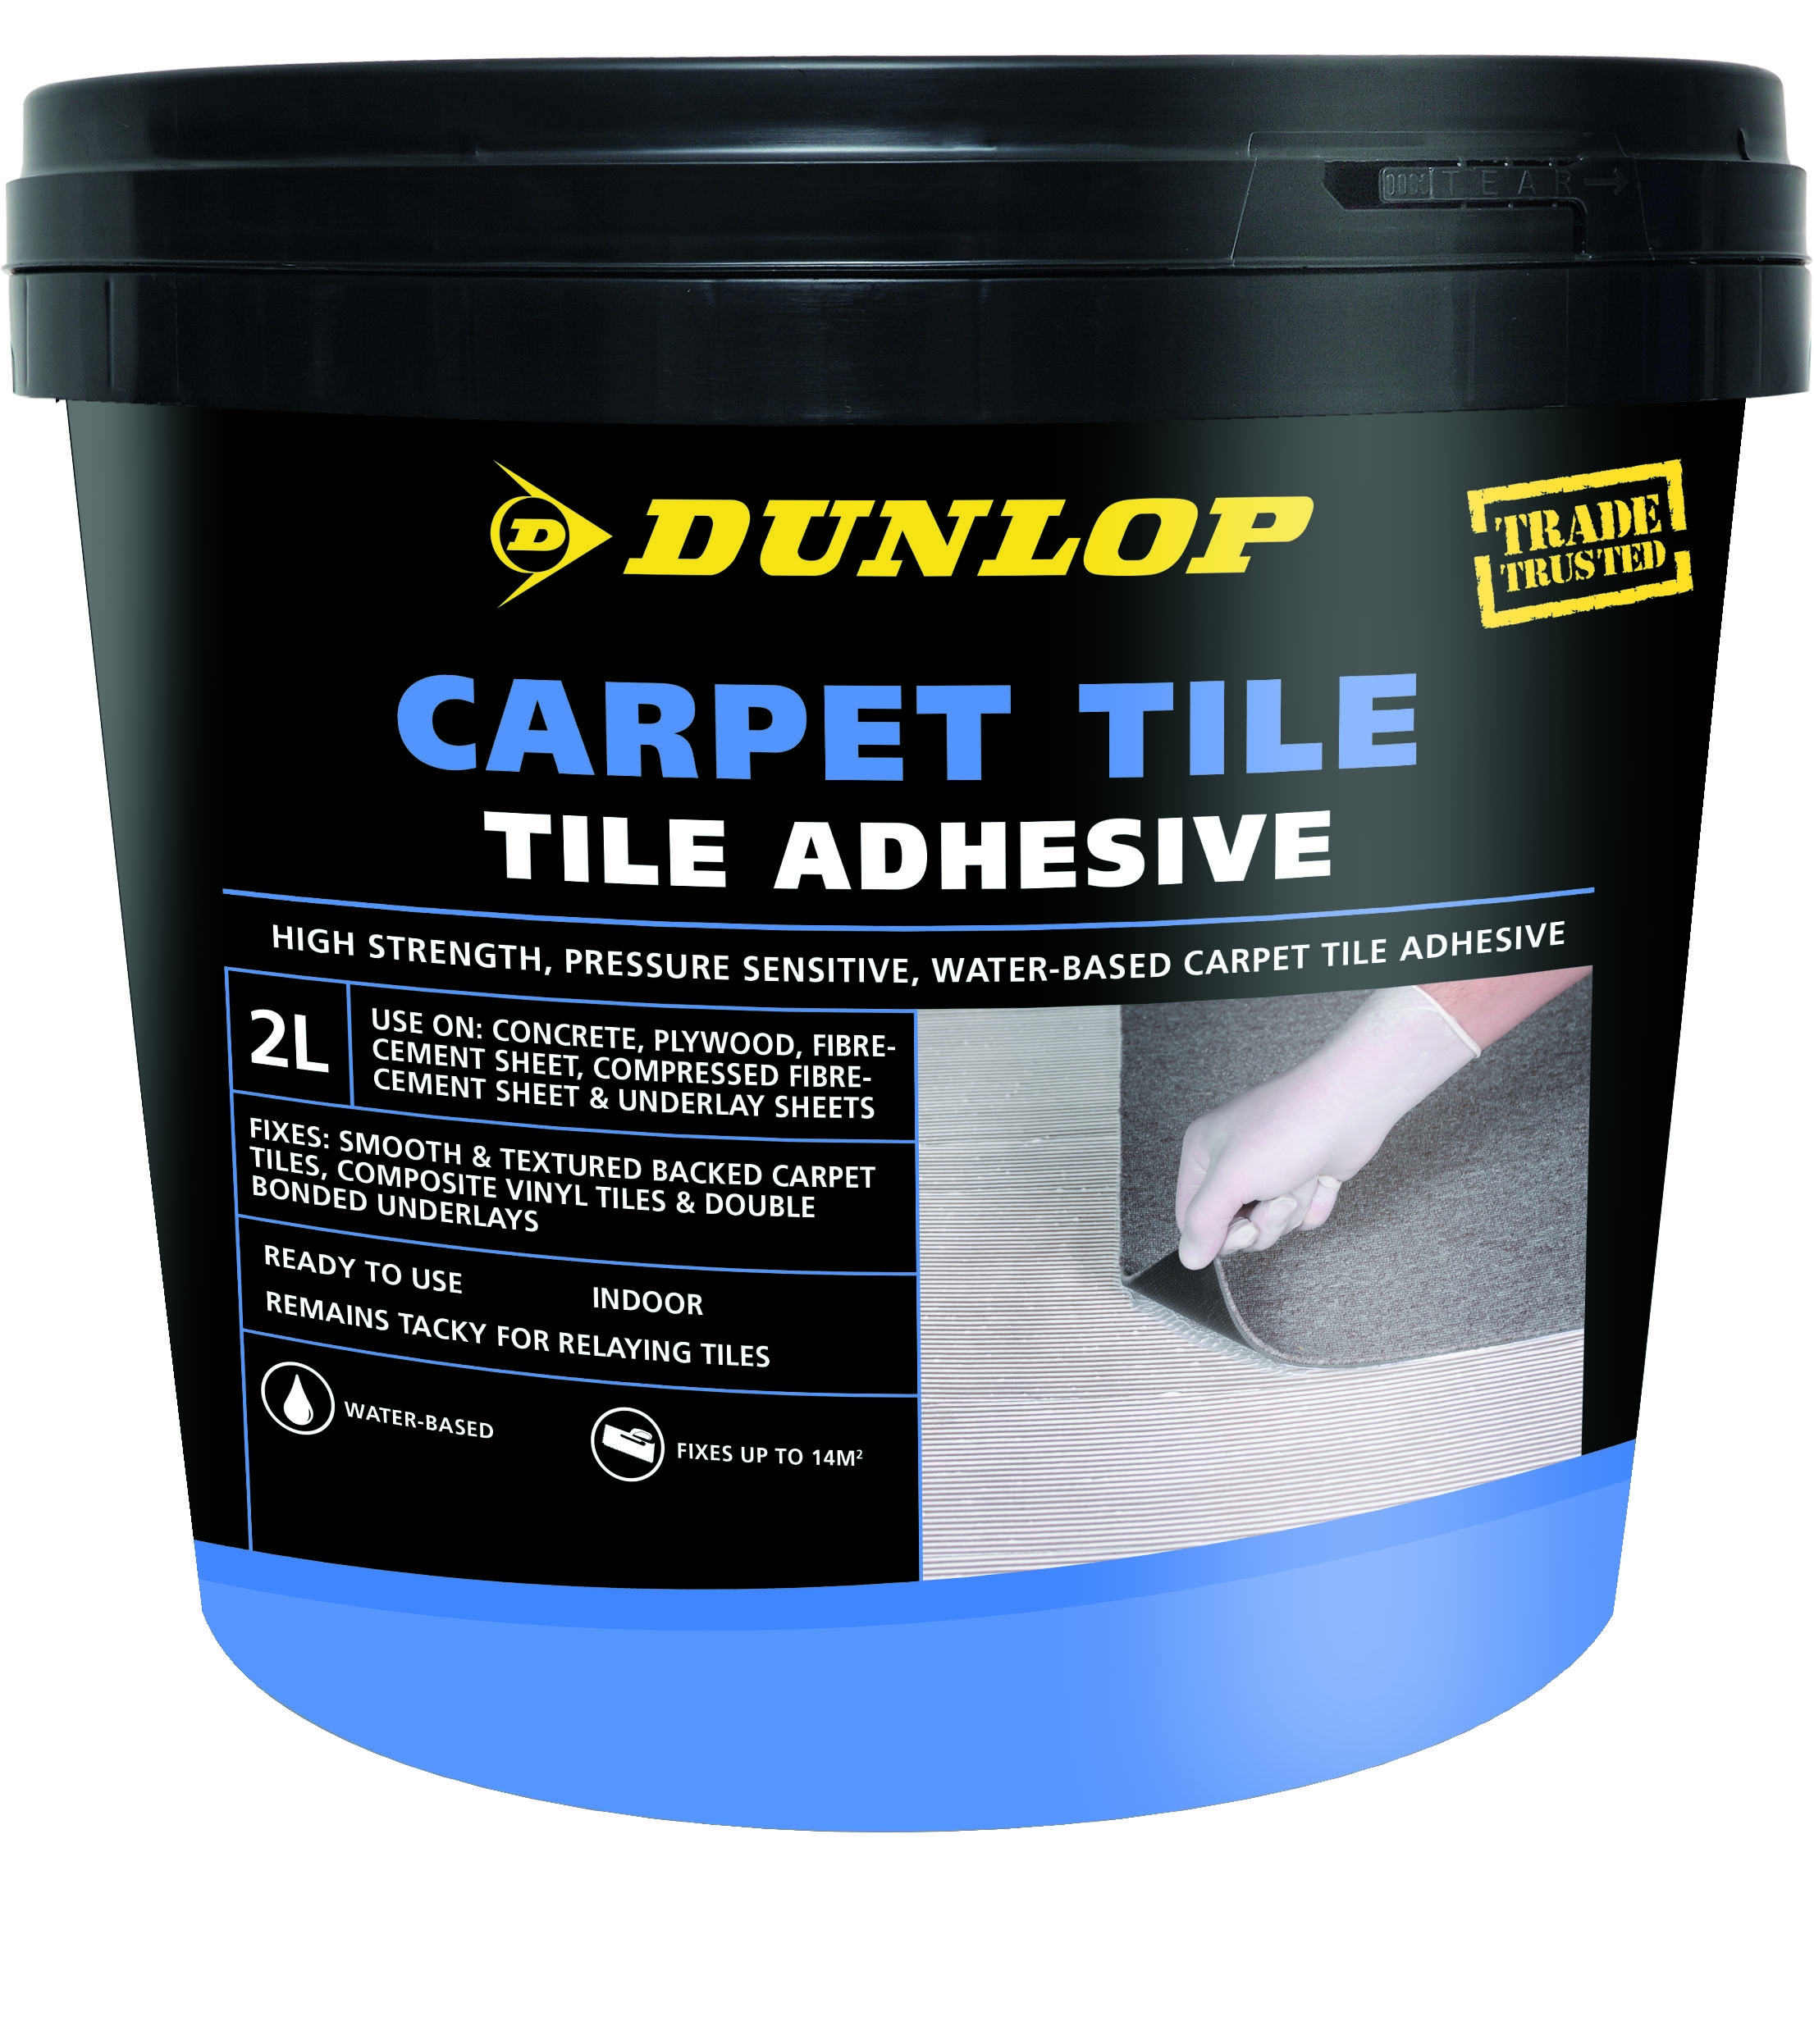 Dunlop Carpet Tile Adhesive - Dunlop Trade AU